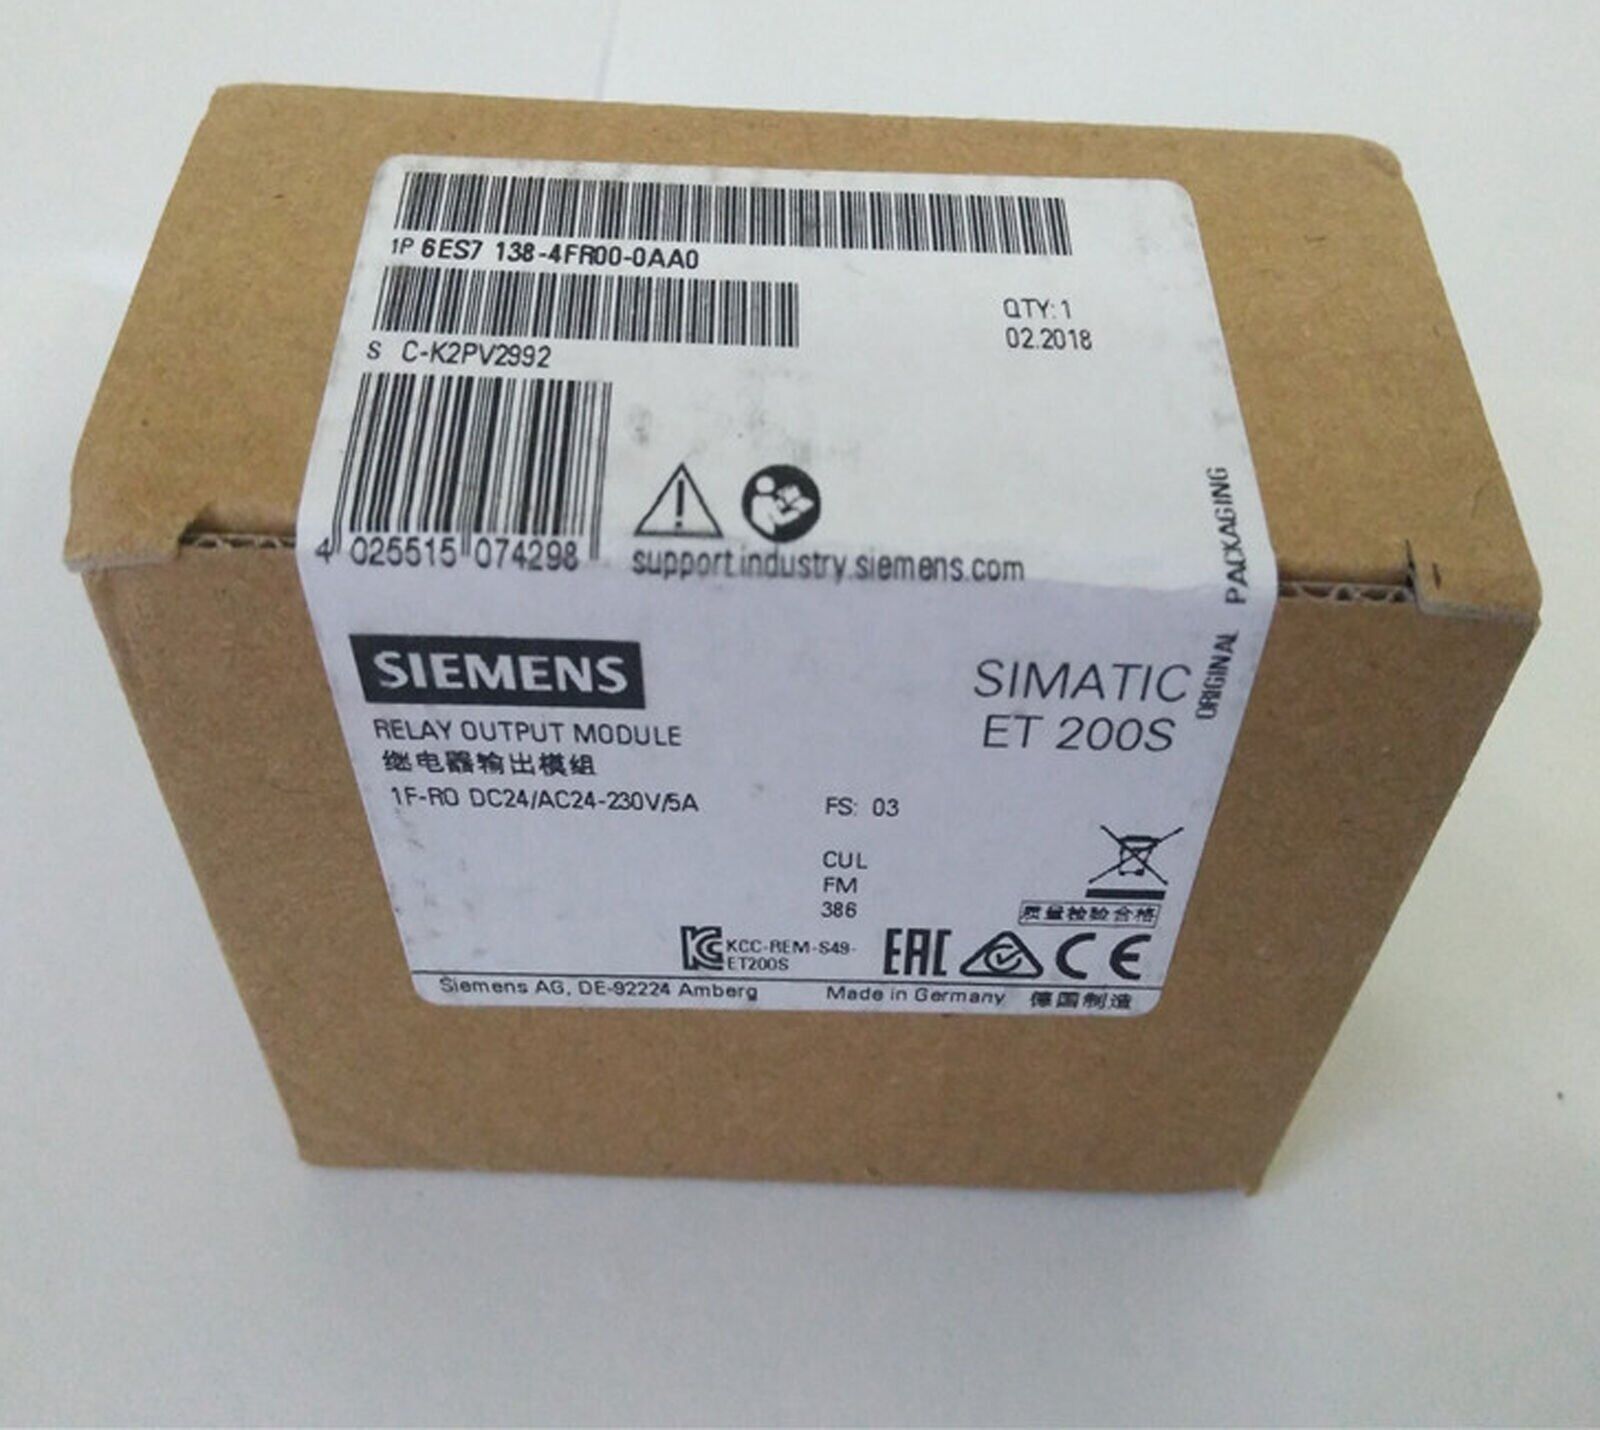 new ONE  Siemens 6ES7138-4FR00-0AA0 6ES7138-4FR00-0AA0 FAST SHIP